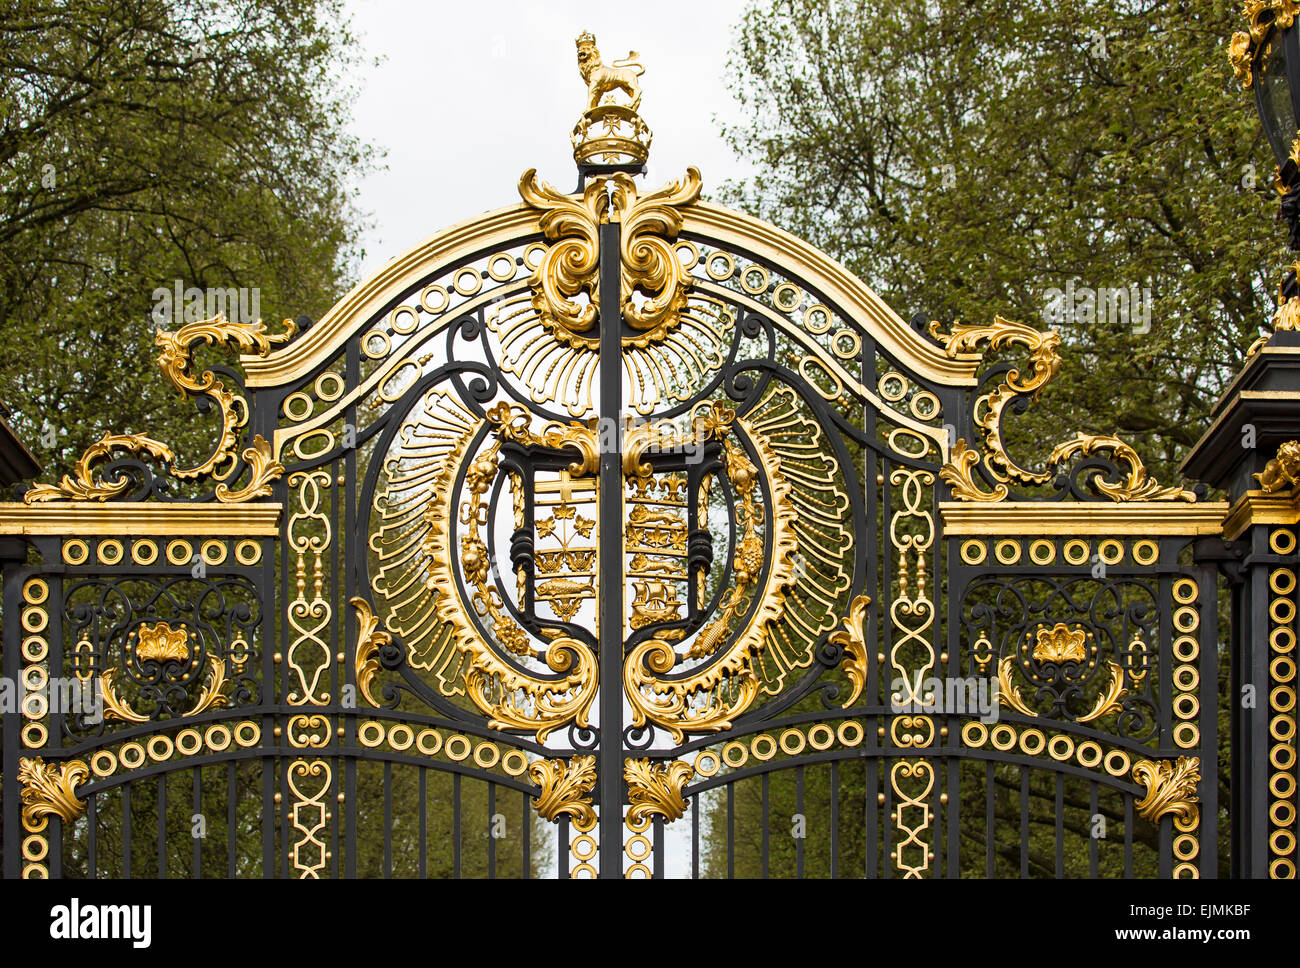 Gilded wrought iron outside Buckingham Palace, London Stock Photo